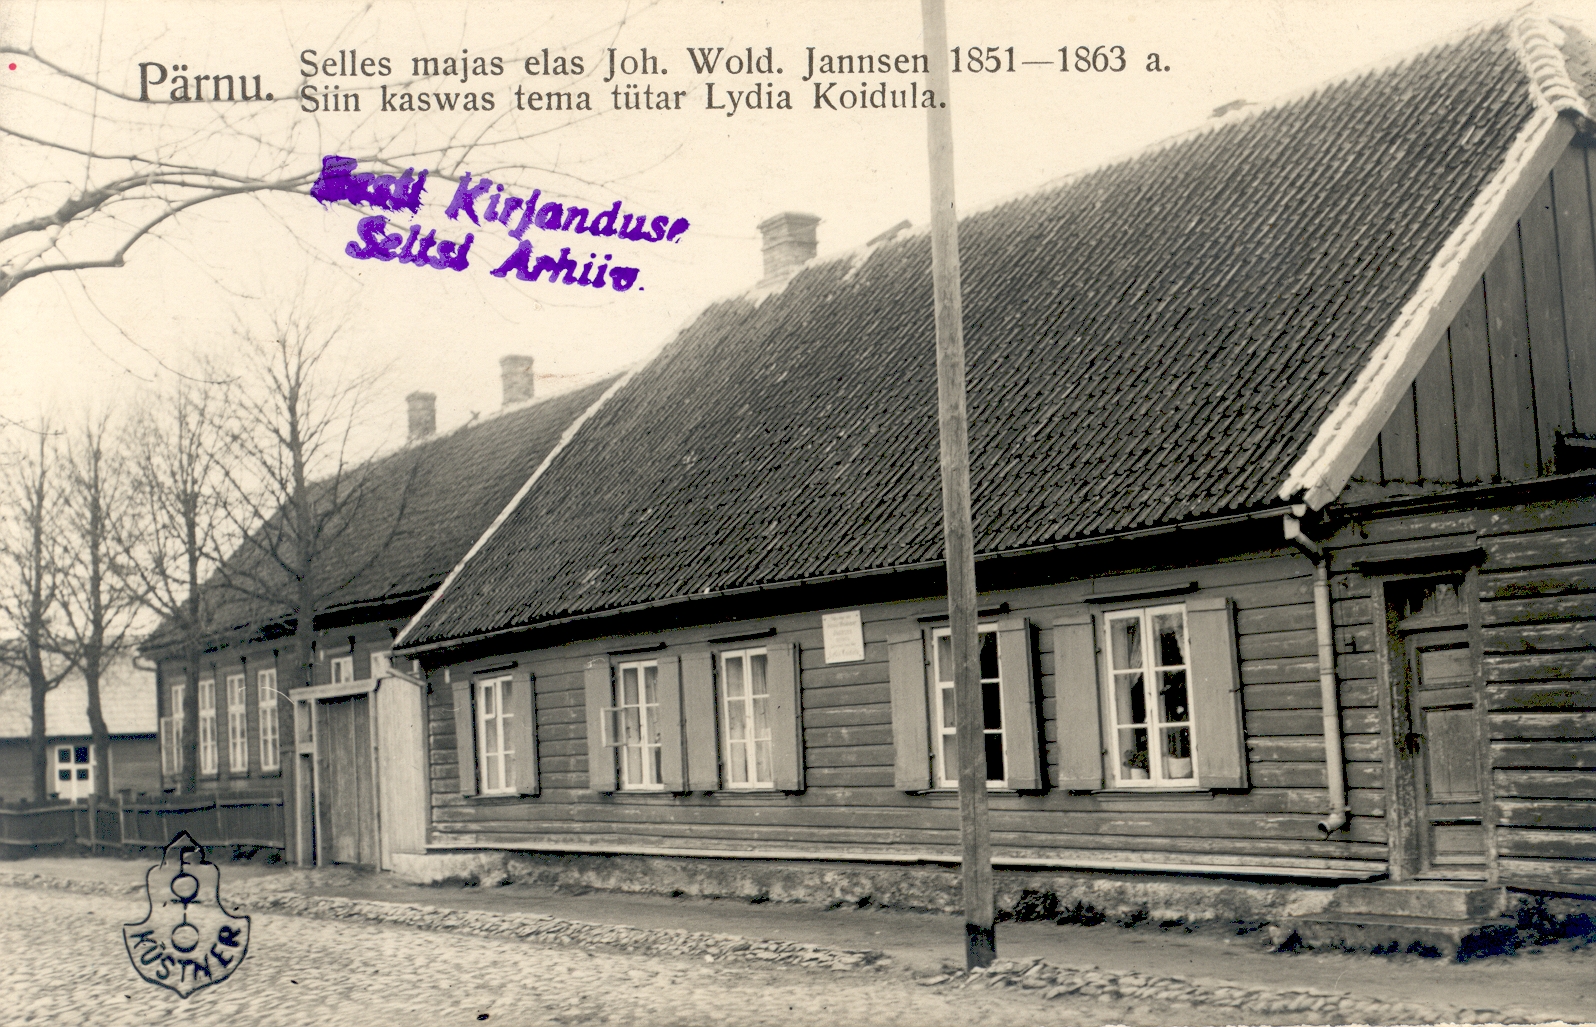 J. W. Jannsen house in Pärnu (1851-1863). A.)